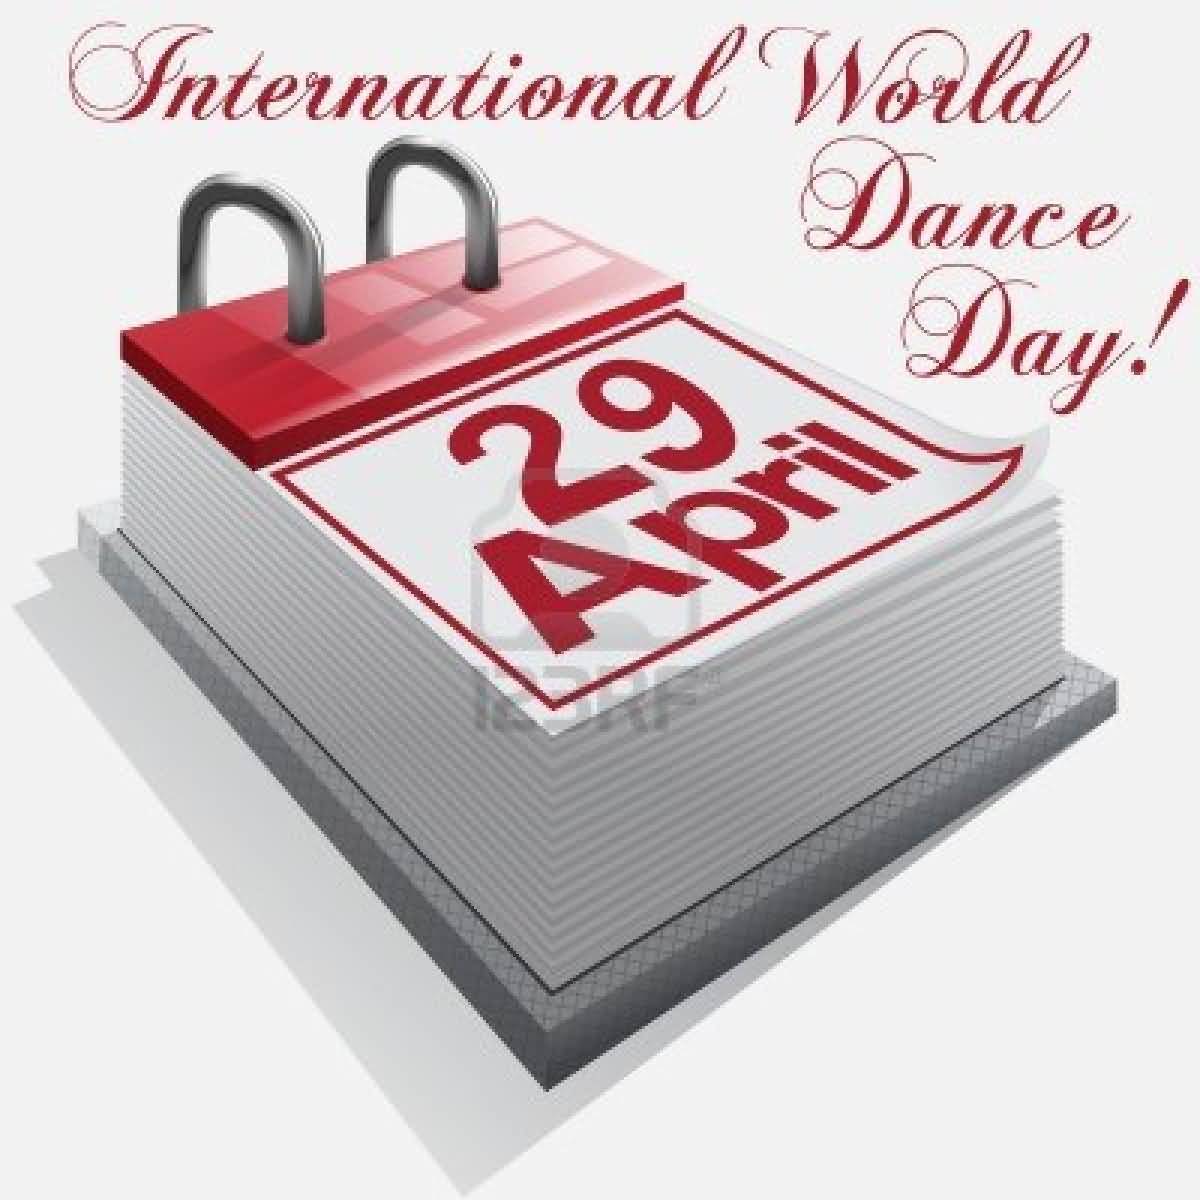 International World Dance Day 29 April Calendar